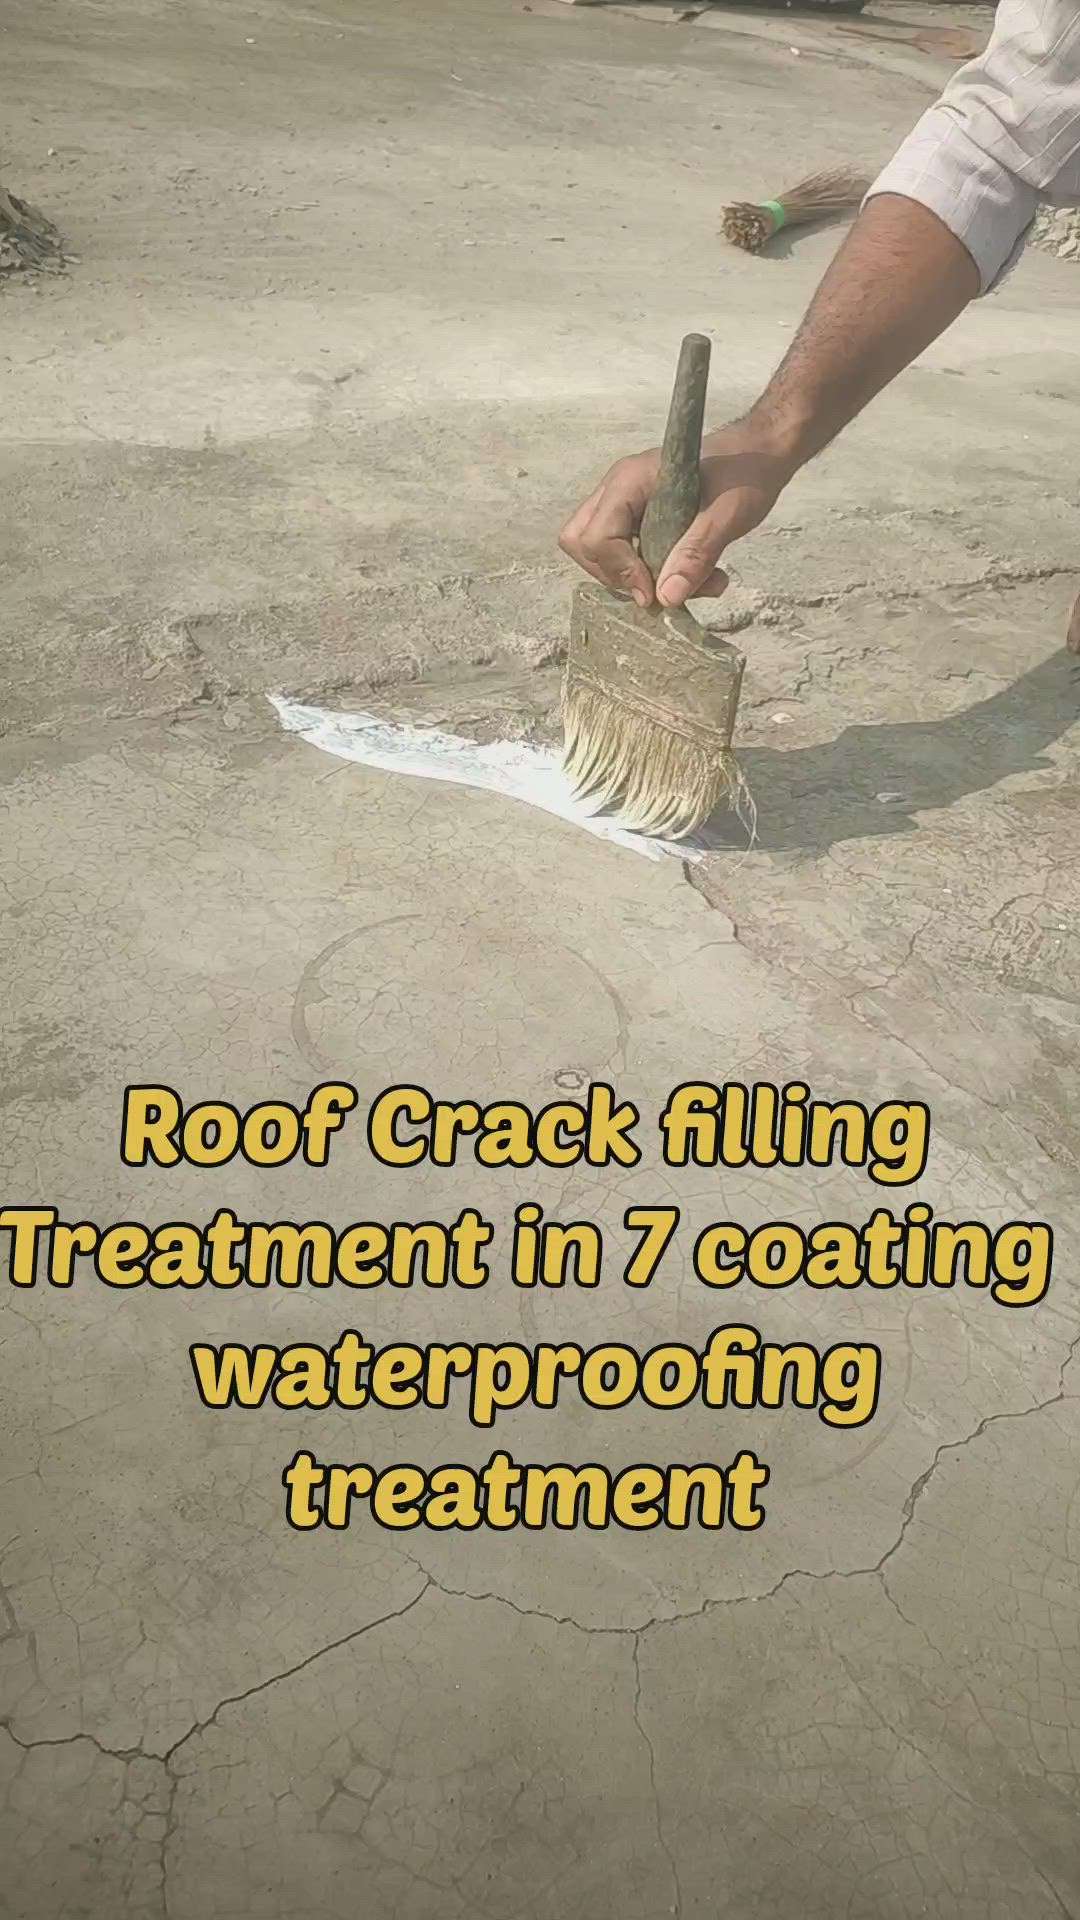 waterproofing
#WaterProofing